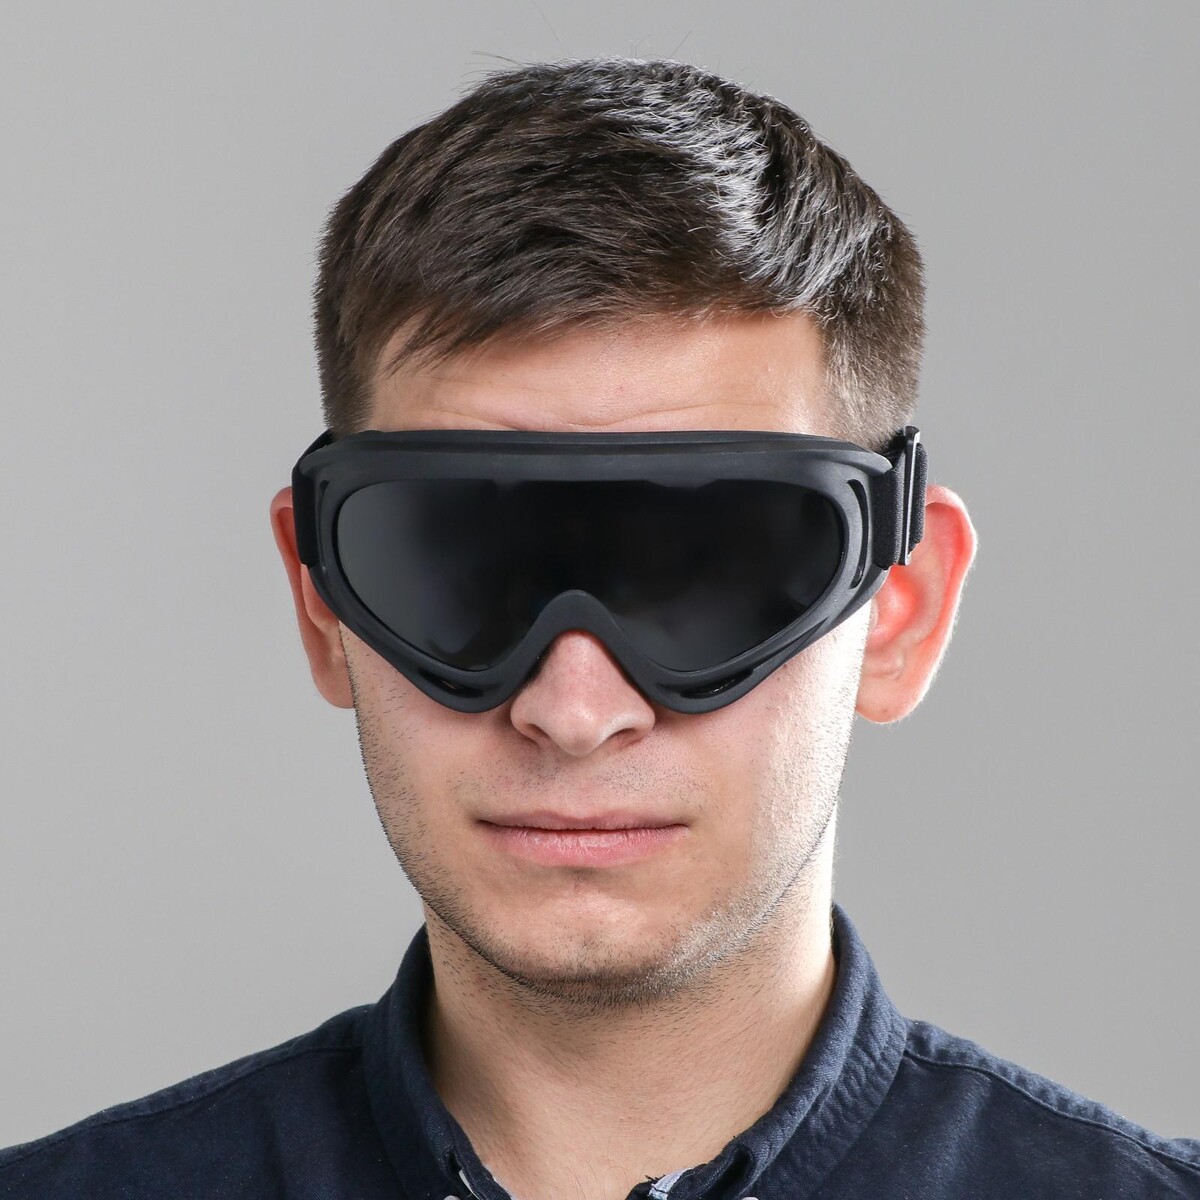 Тонированные мужские очки. Очки с затемнением. Очки сплошные солнцезащитные. Очки с затемненными стеклами. Затемненные очки для зрения мужские.